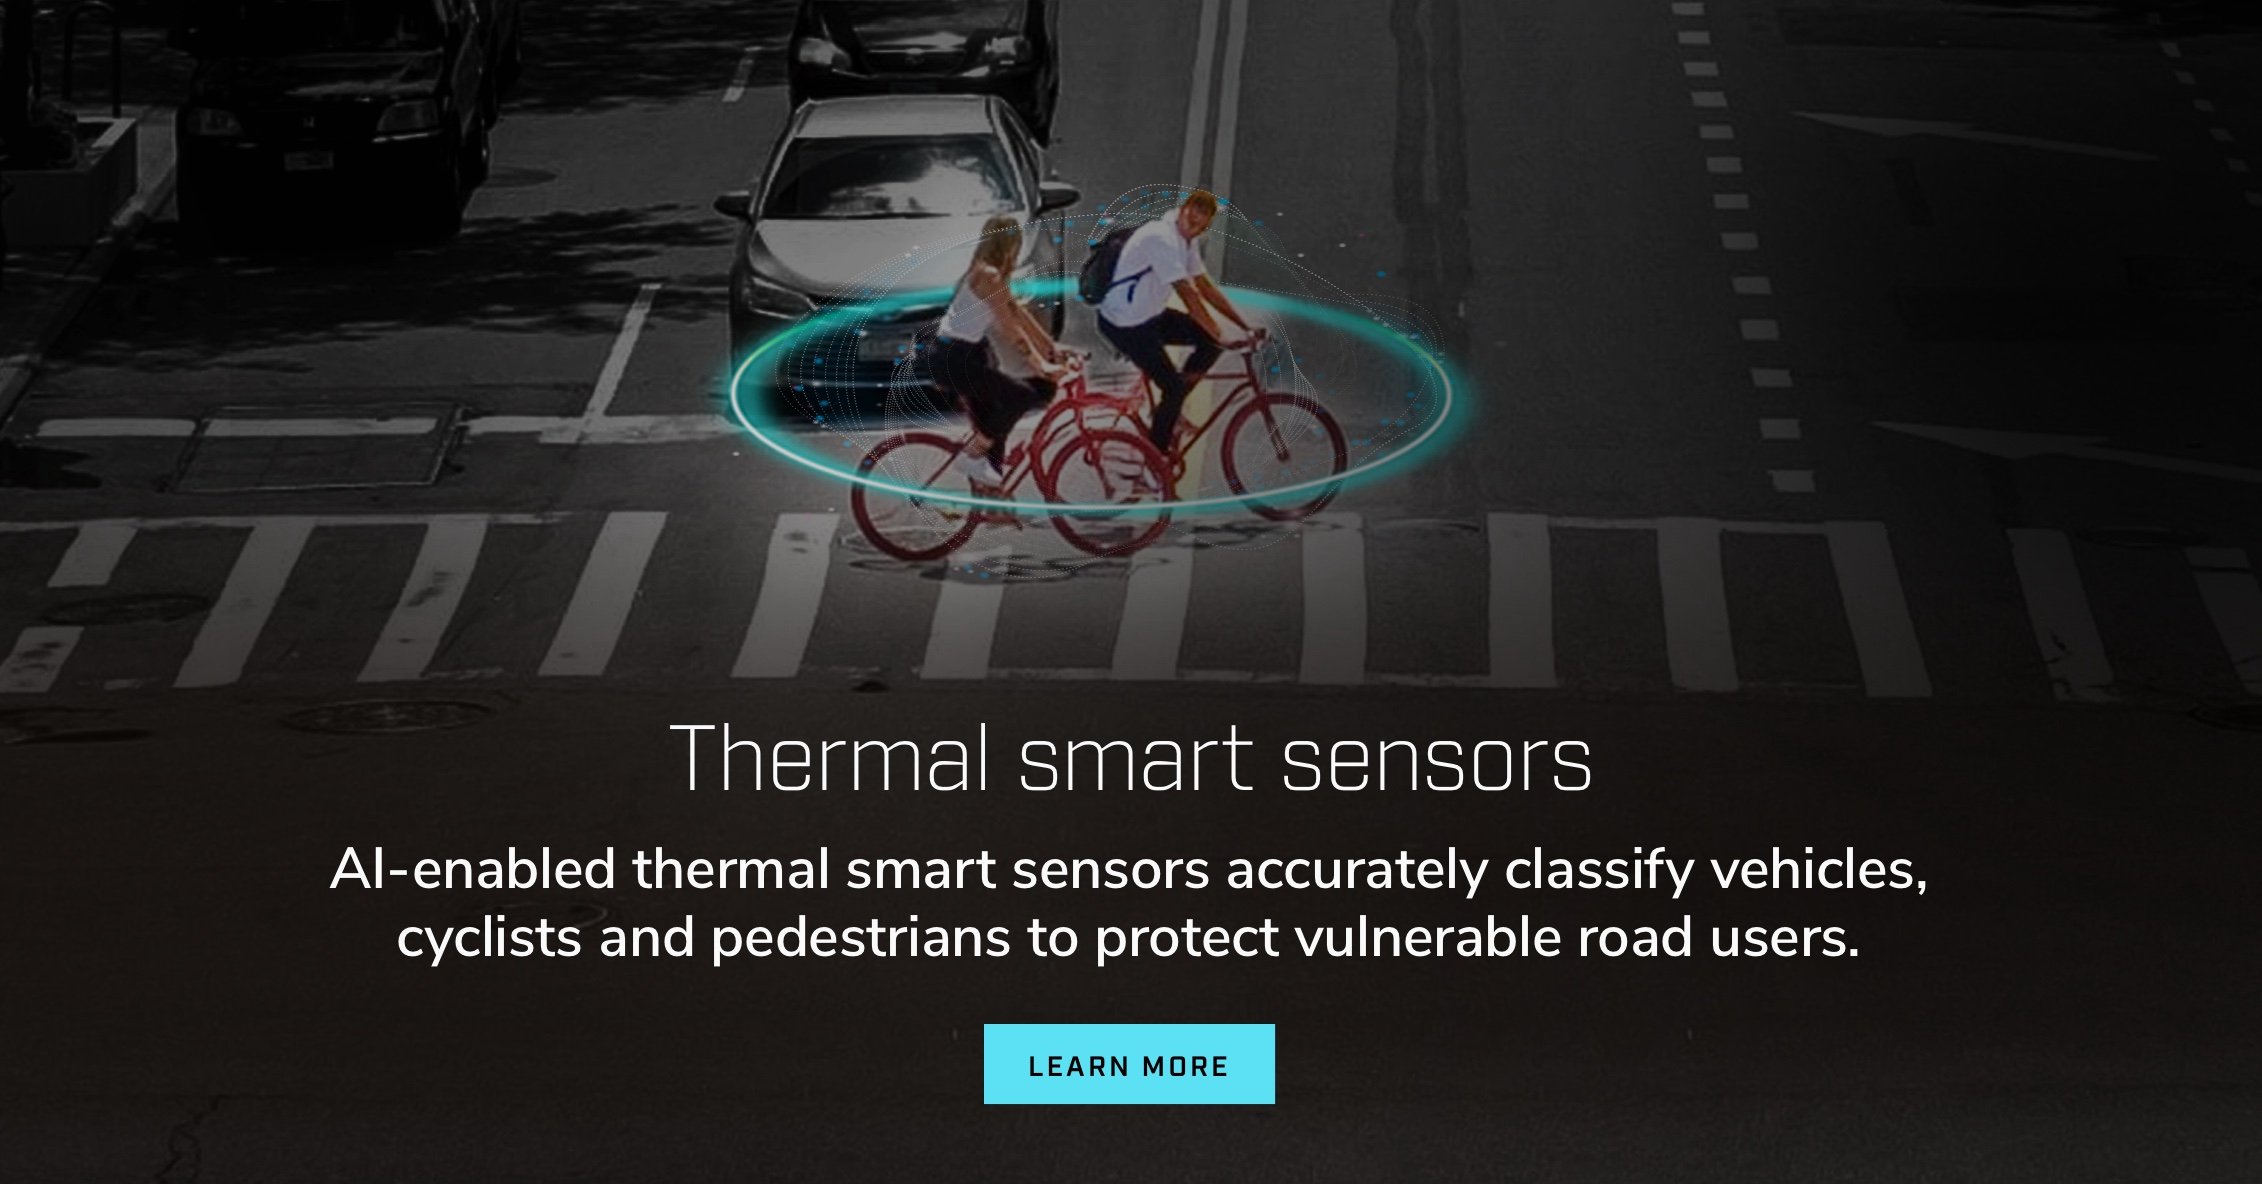 Sensores térmicos inteligentes. Los sensores térmicos inteligentes habilitados con IA clasifican con precisión vehículos, ciclistas y peatones para proteger a los usuarios vulnerables de las carreteras.